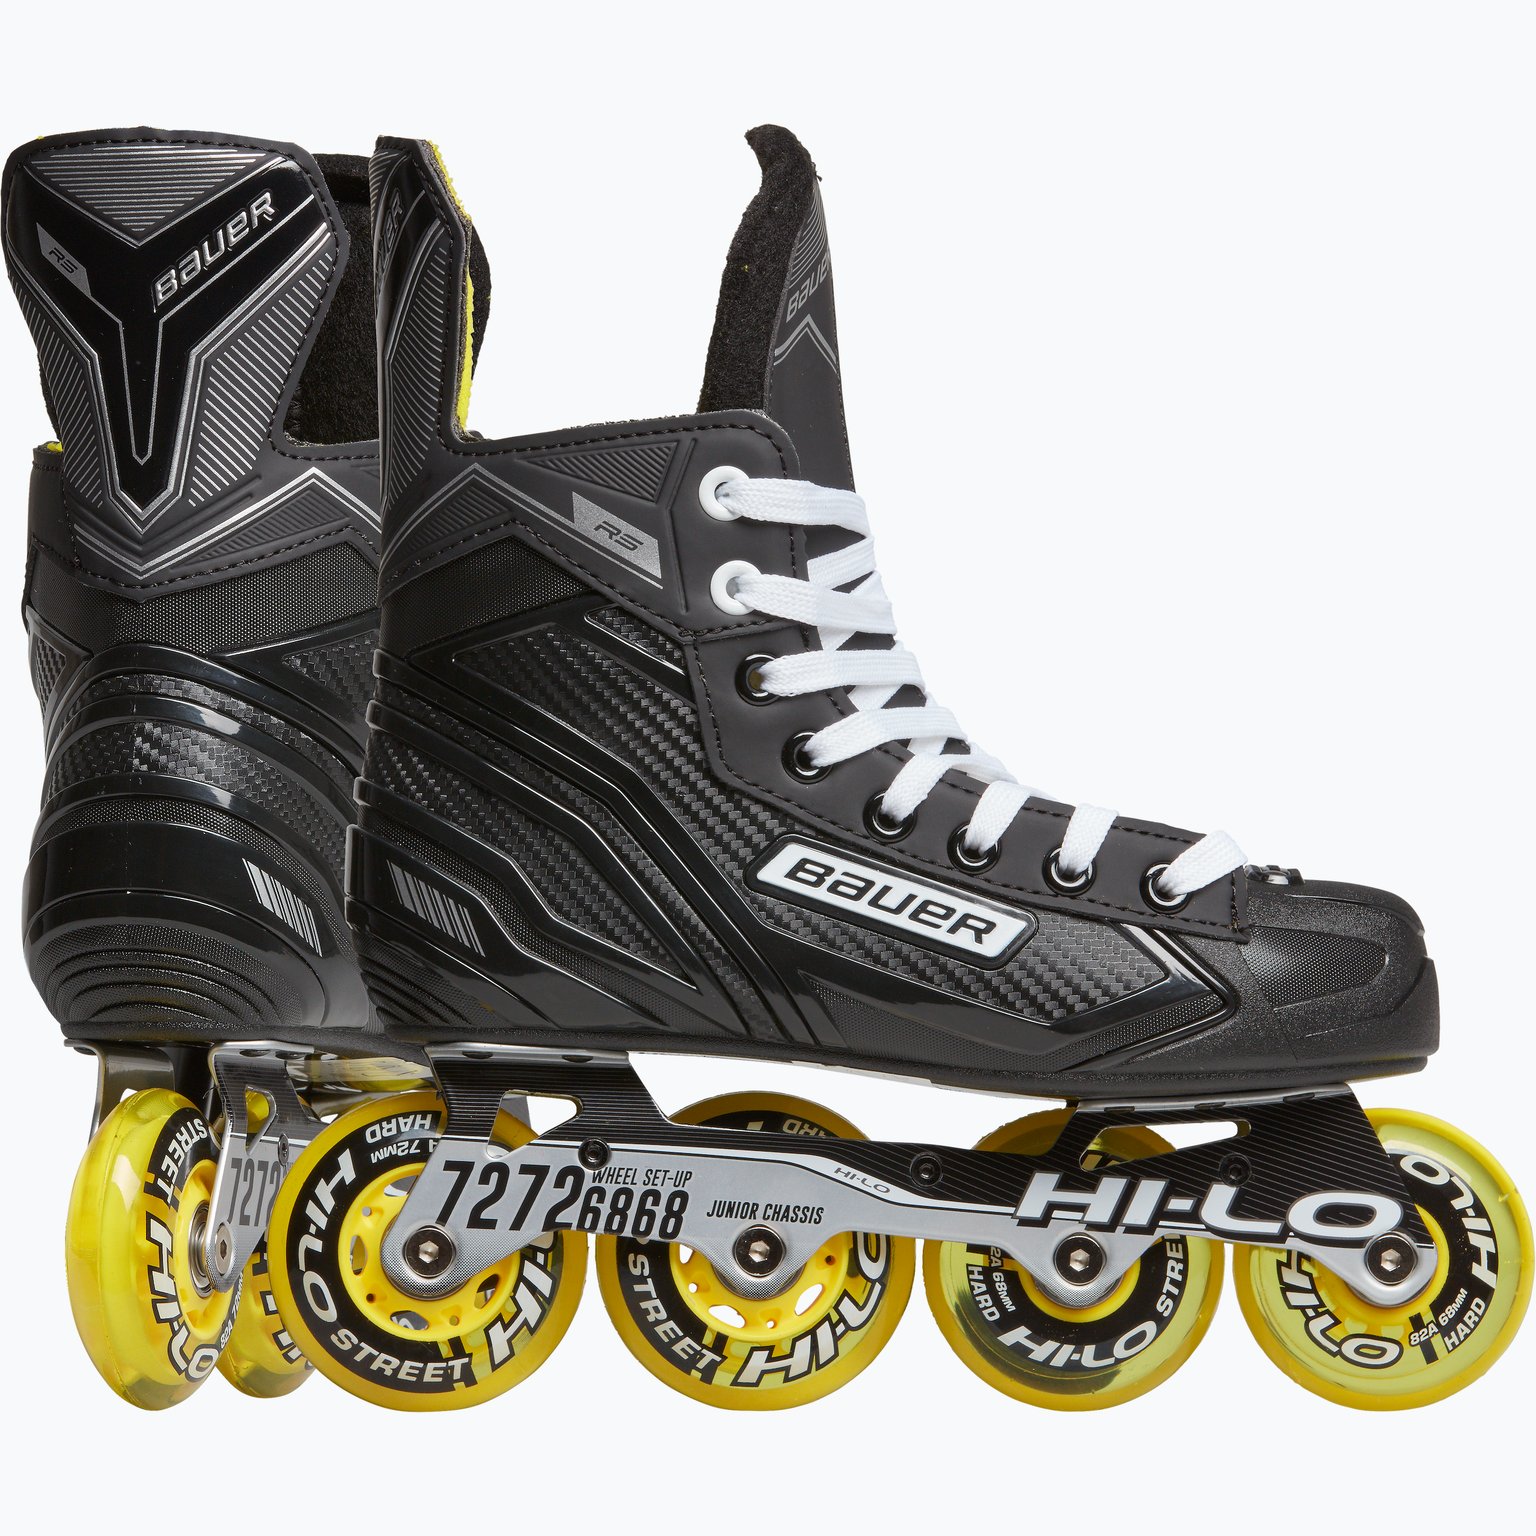 Rollerhockey RS Skate JR hockeyinlines